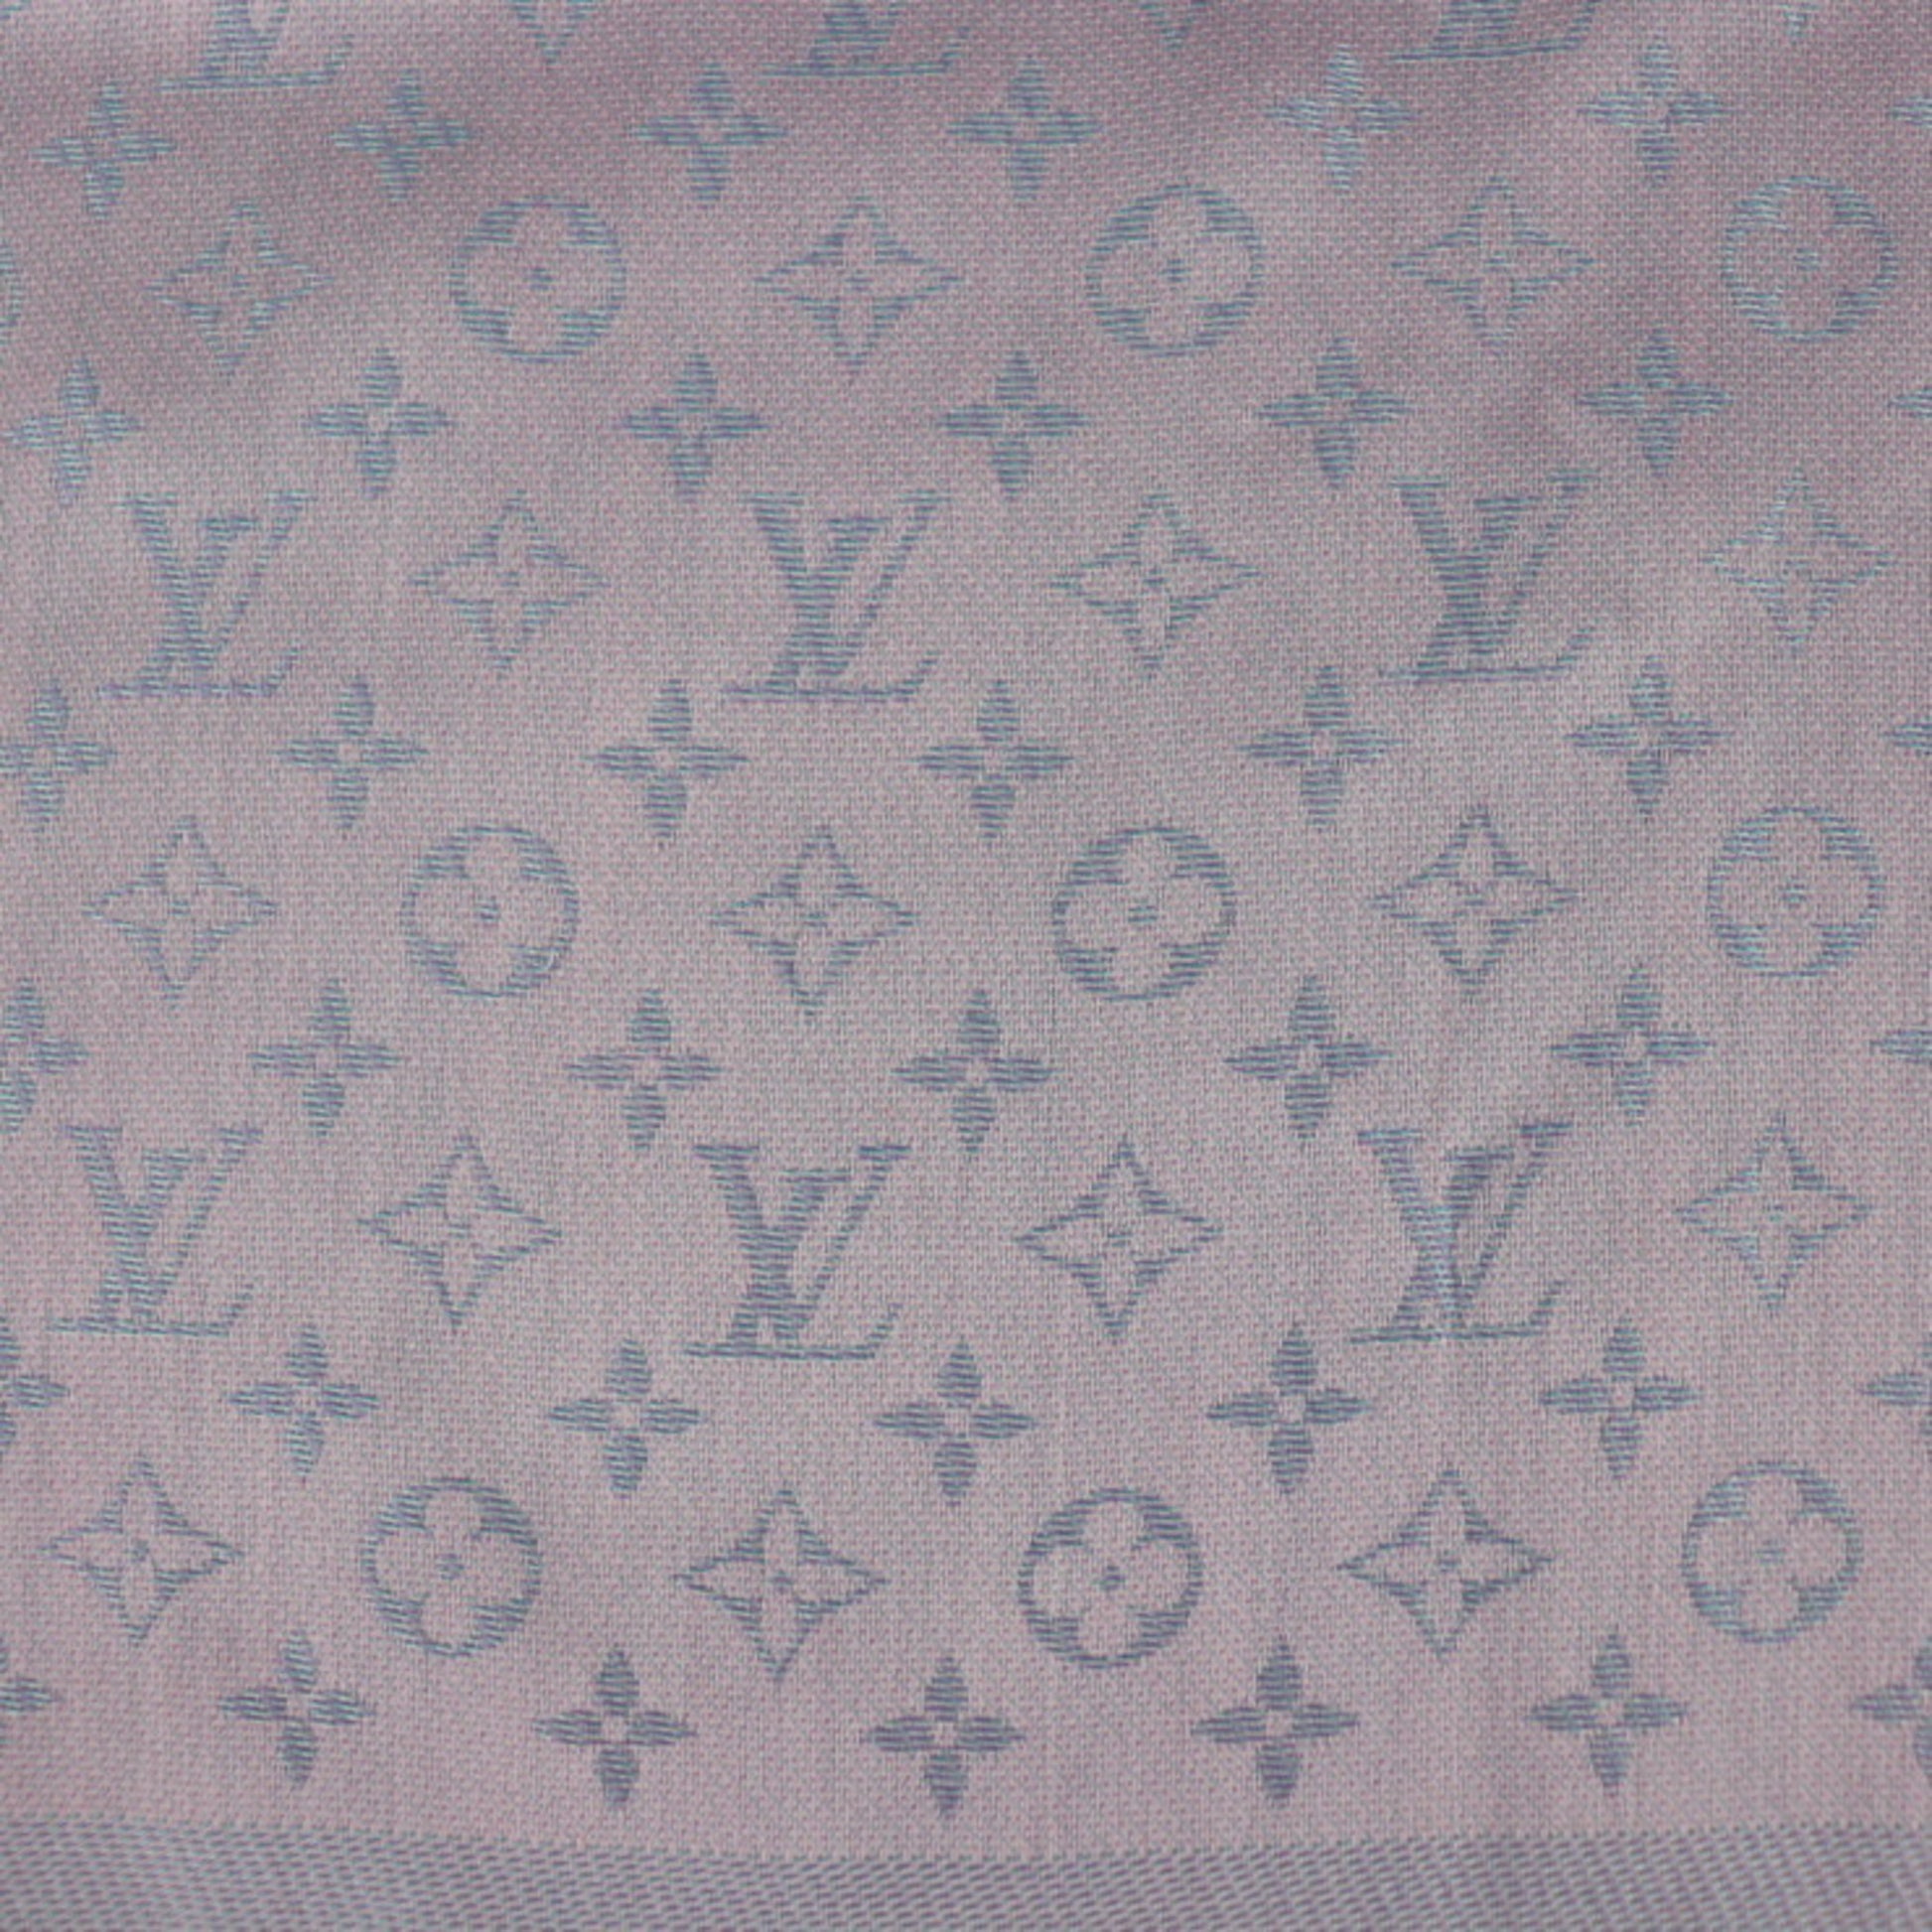 Velvet stole Louis Vuitton Pink in Velvet - 25250713